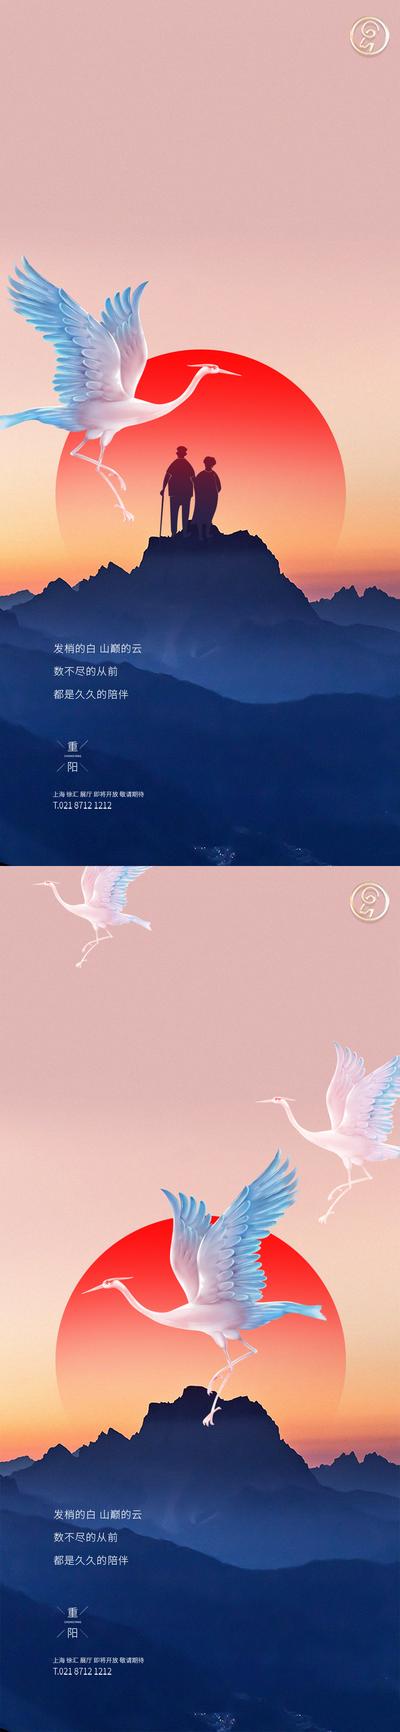 南门网 海报 中国传统节日 重阳节 老人 登山 白鹤 太阳 